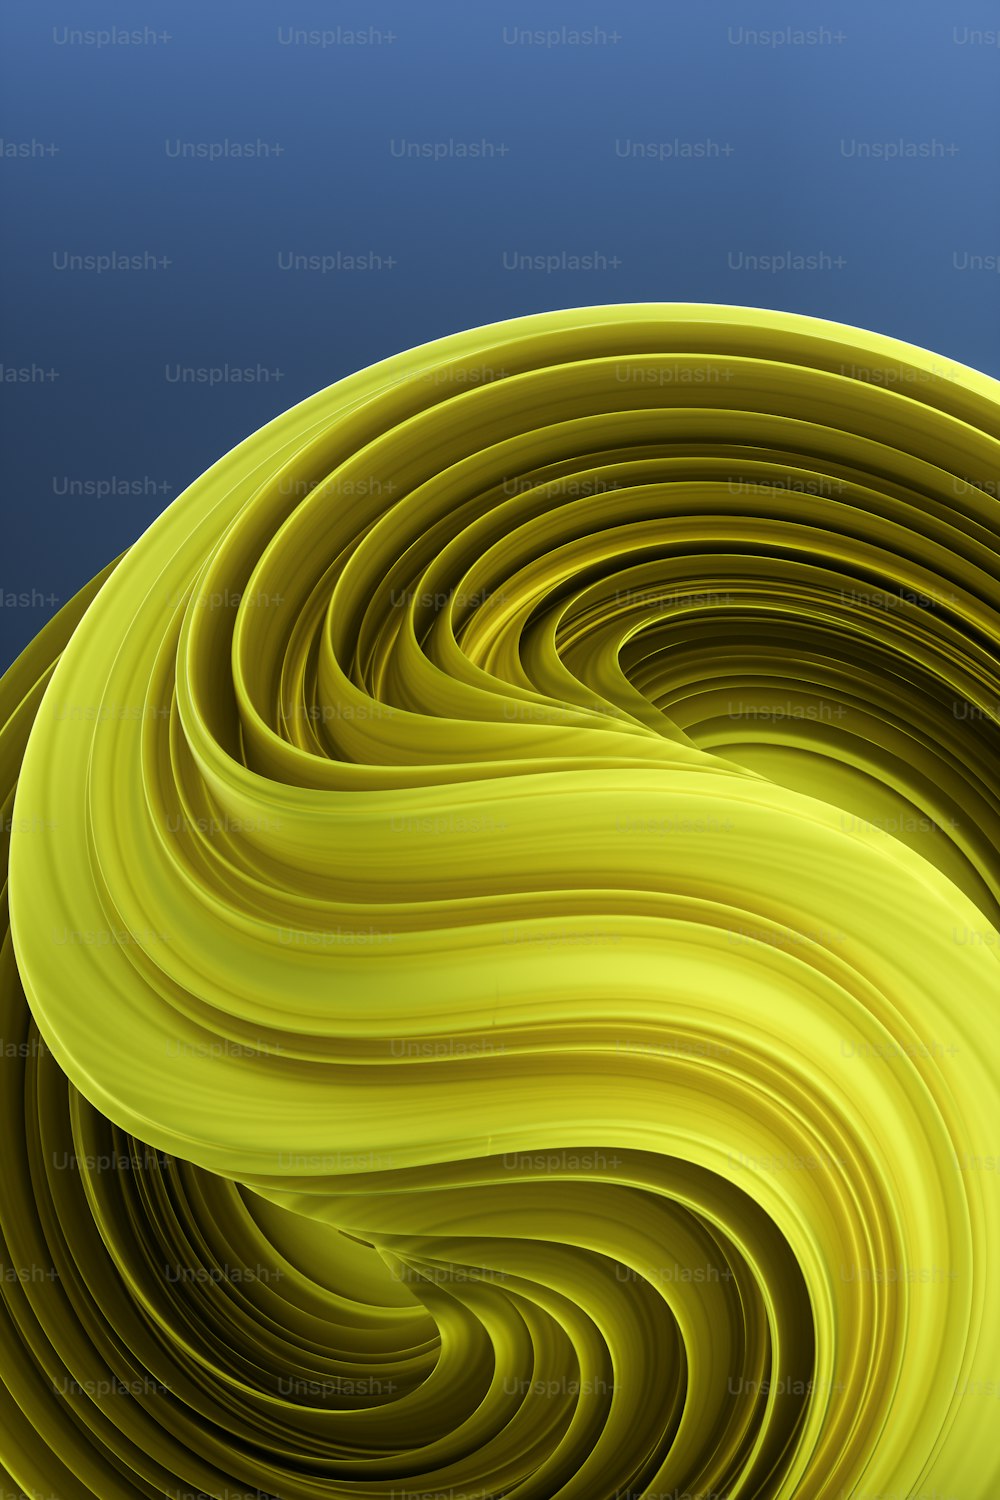 Una imagen generada por computadora de un objeto amarillo curvo